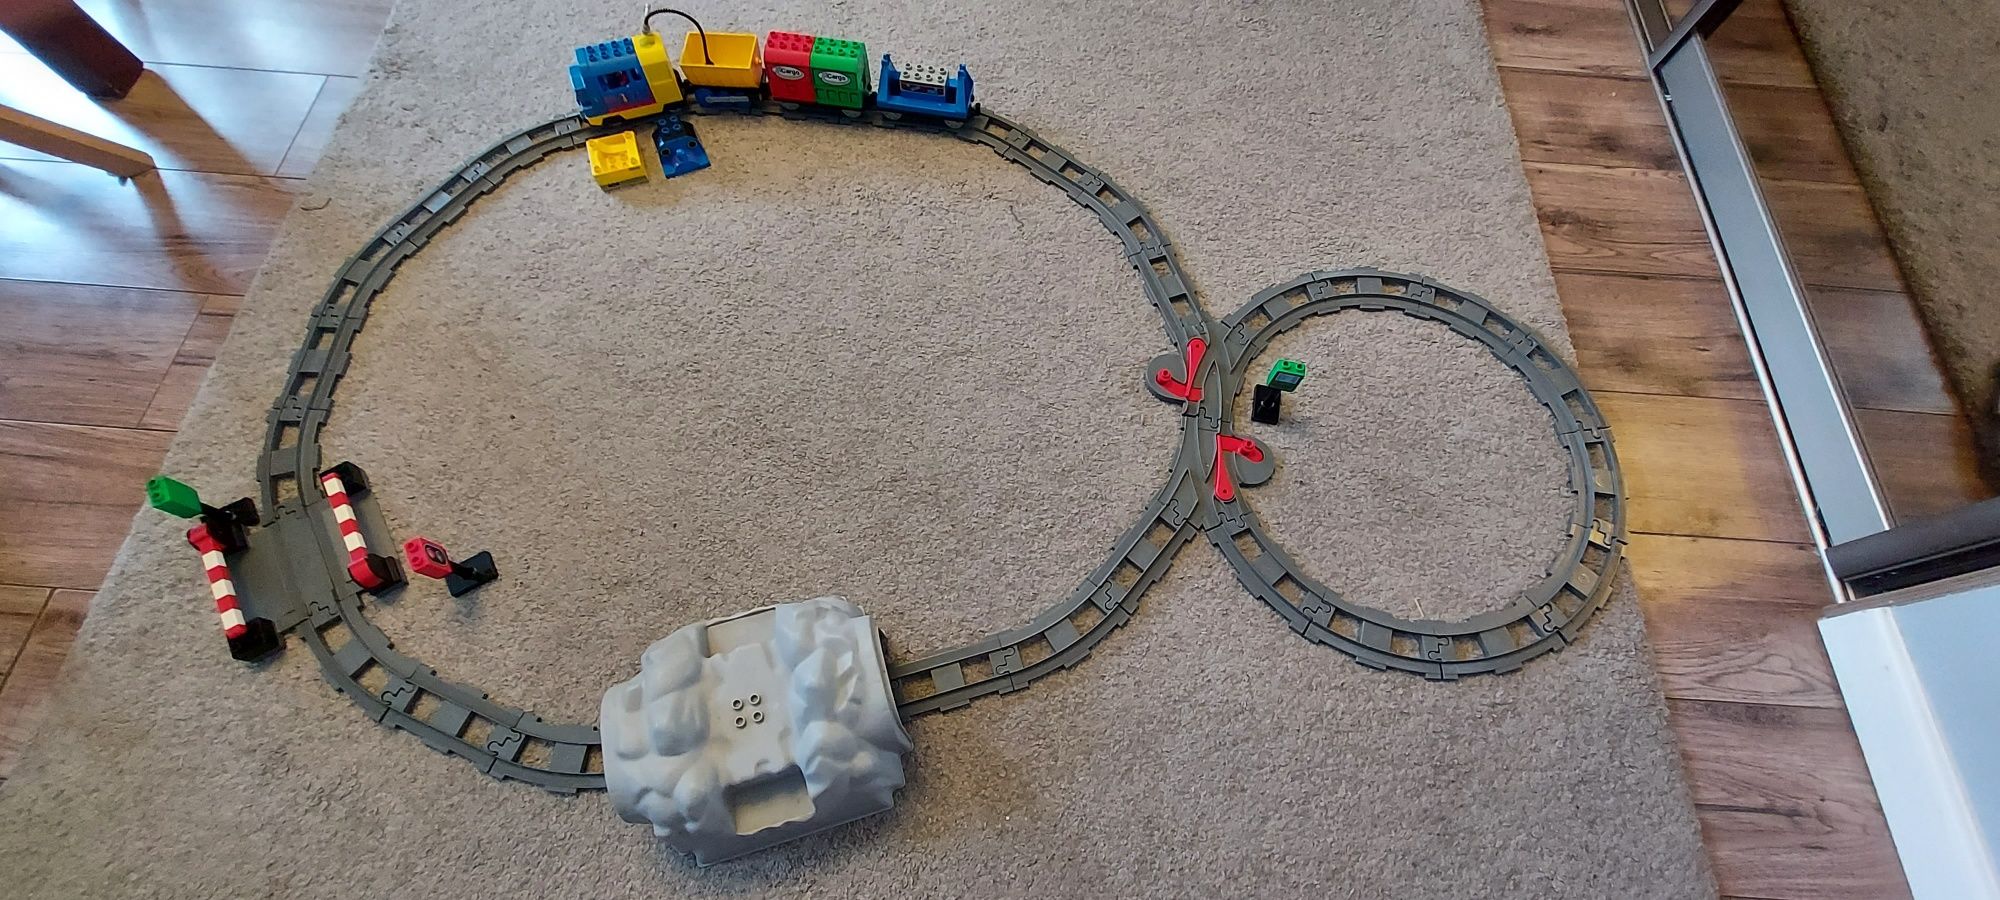 Lego Duplo pociąg tunel przejazd kolejowy